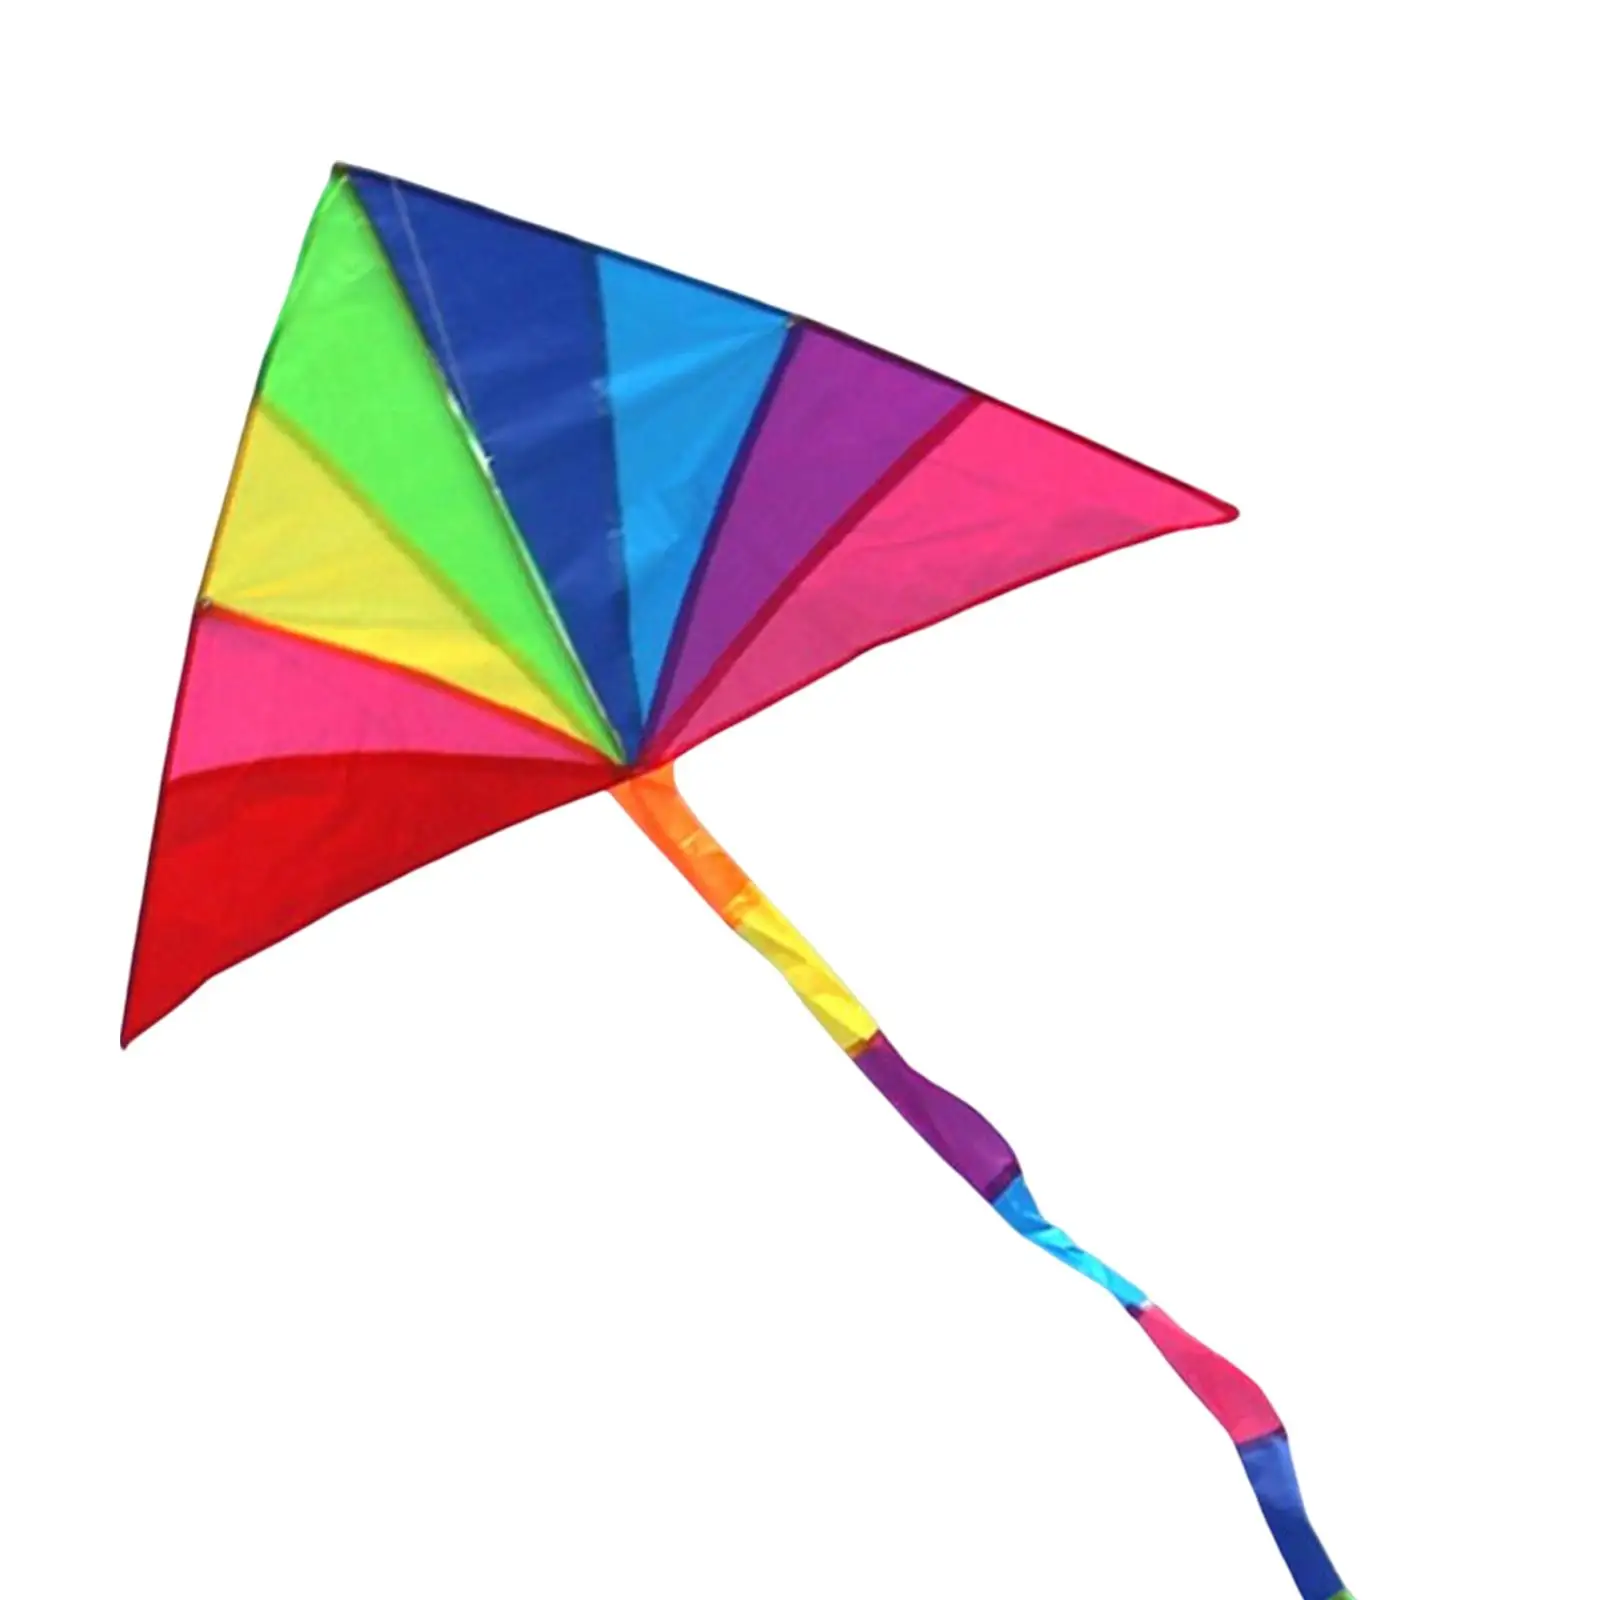 Rainbow Delta Kite Single Line Triangle Kite for Garden Activities